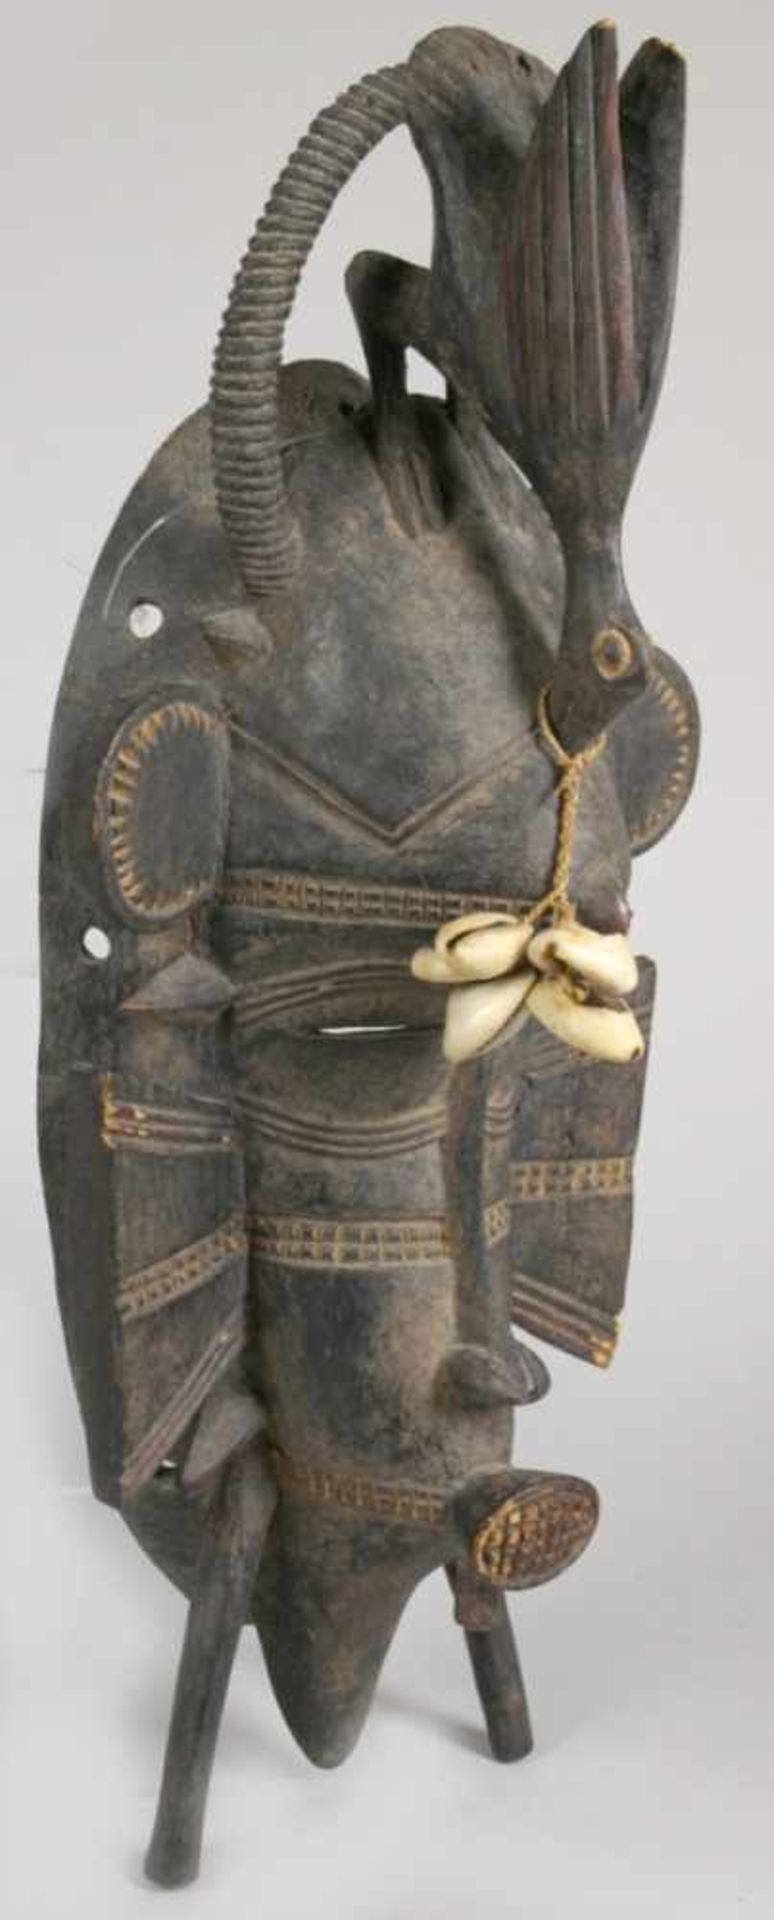 Kpelie-Maske, Senufo, Elfenbeinküste, strenges, kubistisches Gesicht mit kleinen, - Bild 3 aus 4